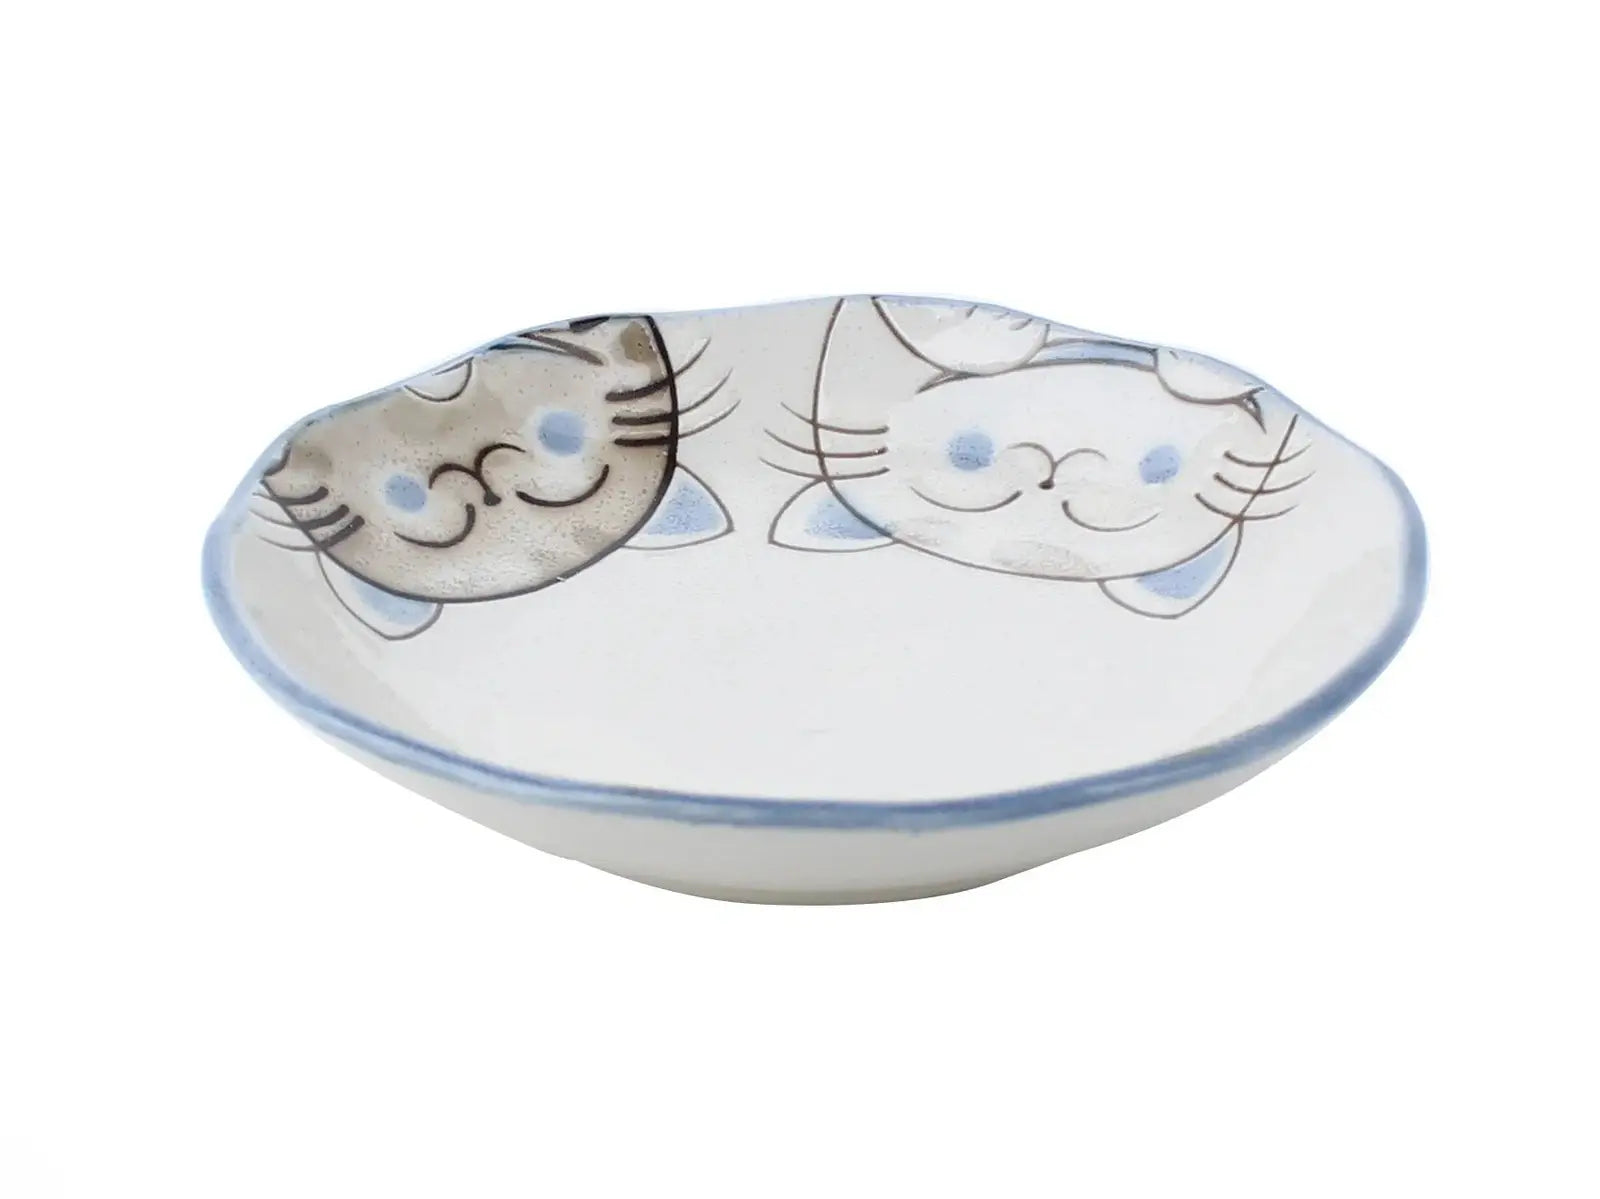 Minoru Three Cat Plate 13.2D